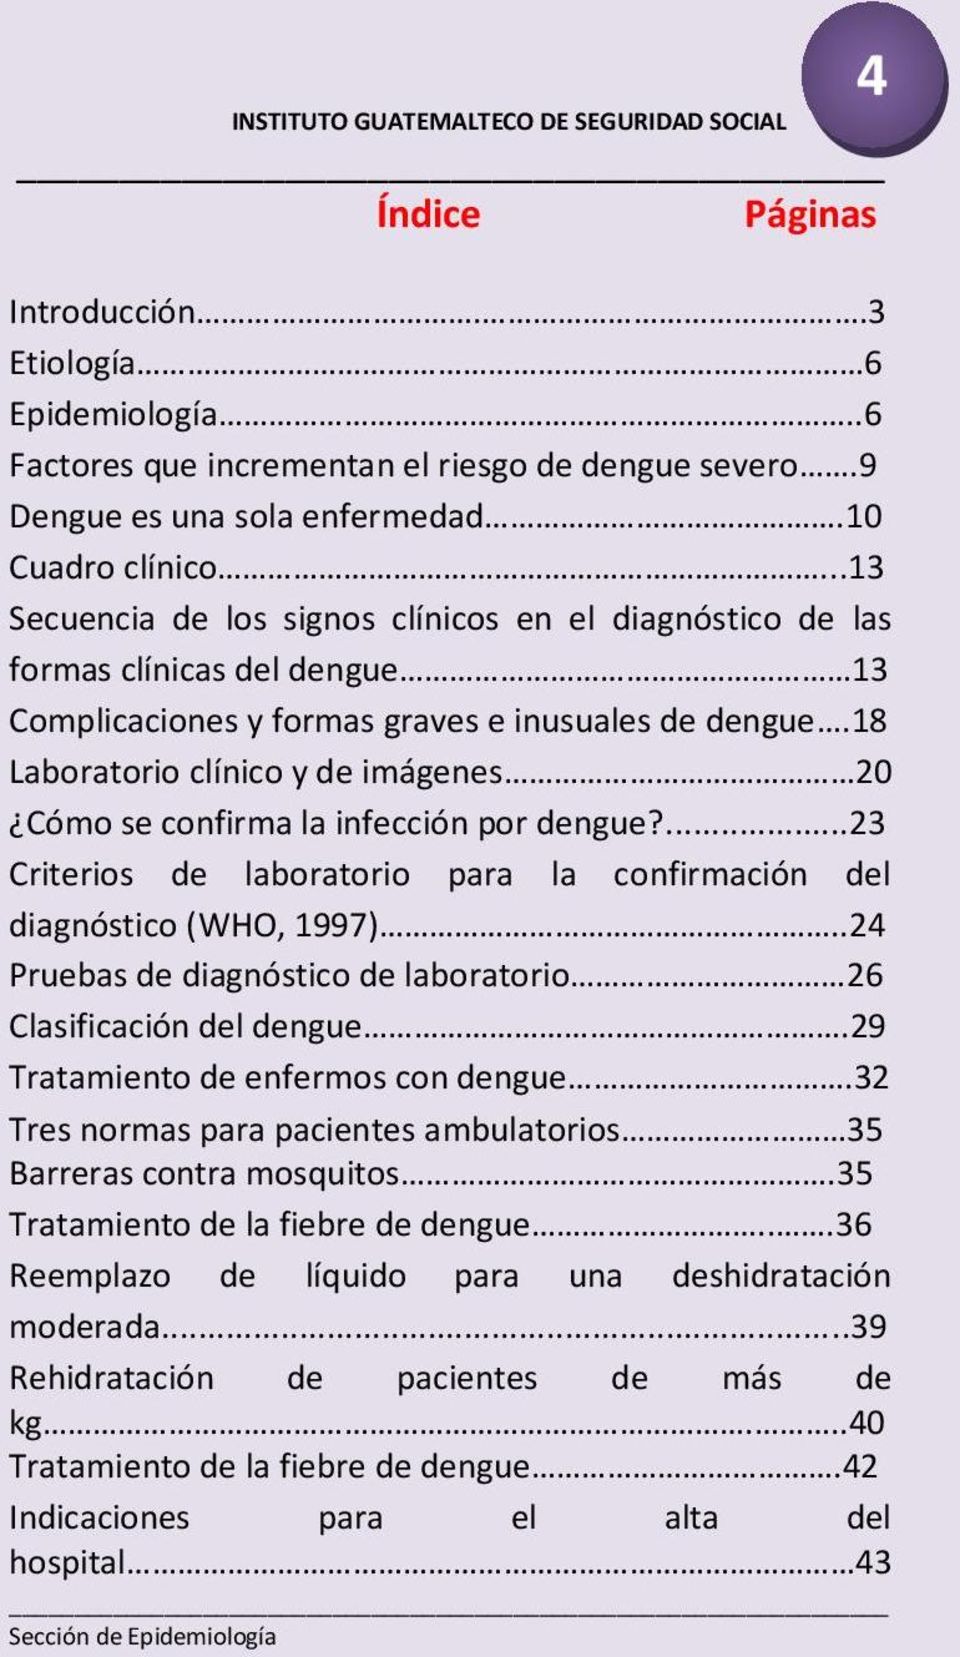 18 Laboratorio clínico y de imágenes 20 Cómo se confirma la infección por dengue?...23 Criterios de laboratorio para la confirmación del diagnóstico (WHO, 1997).